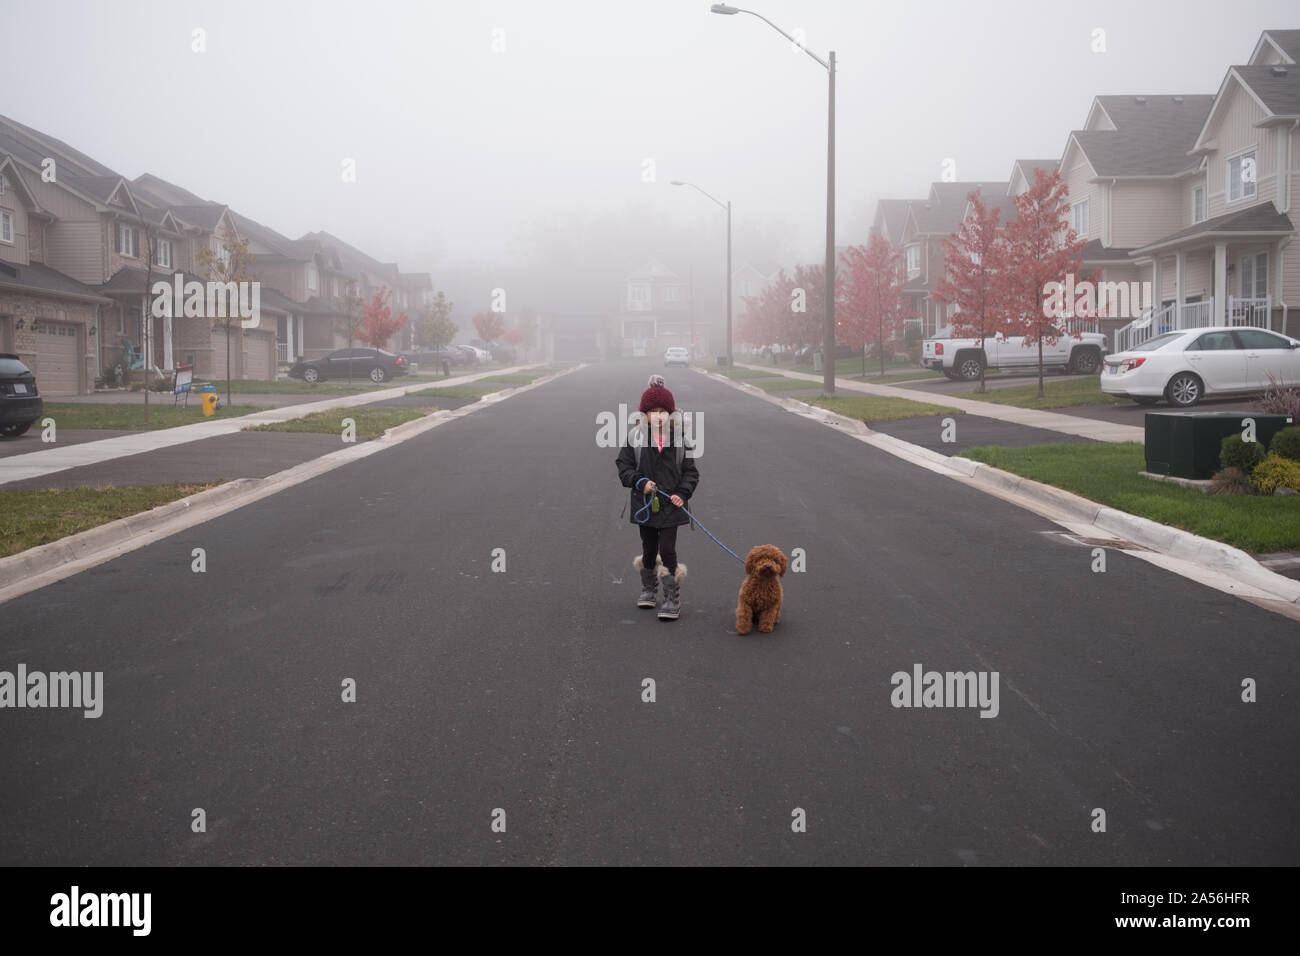 Ragazza camminare cane nel centro di misty strada suburbana a piena lunghezza ritratto Foto Stock